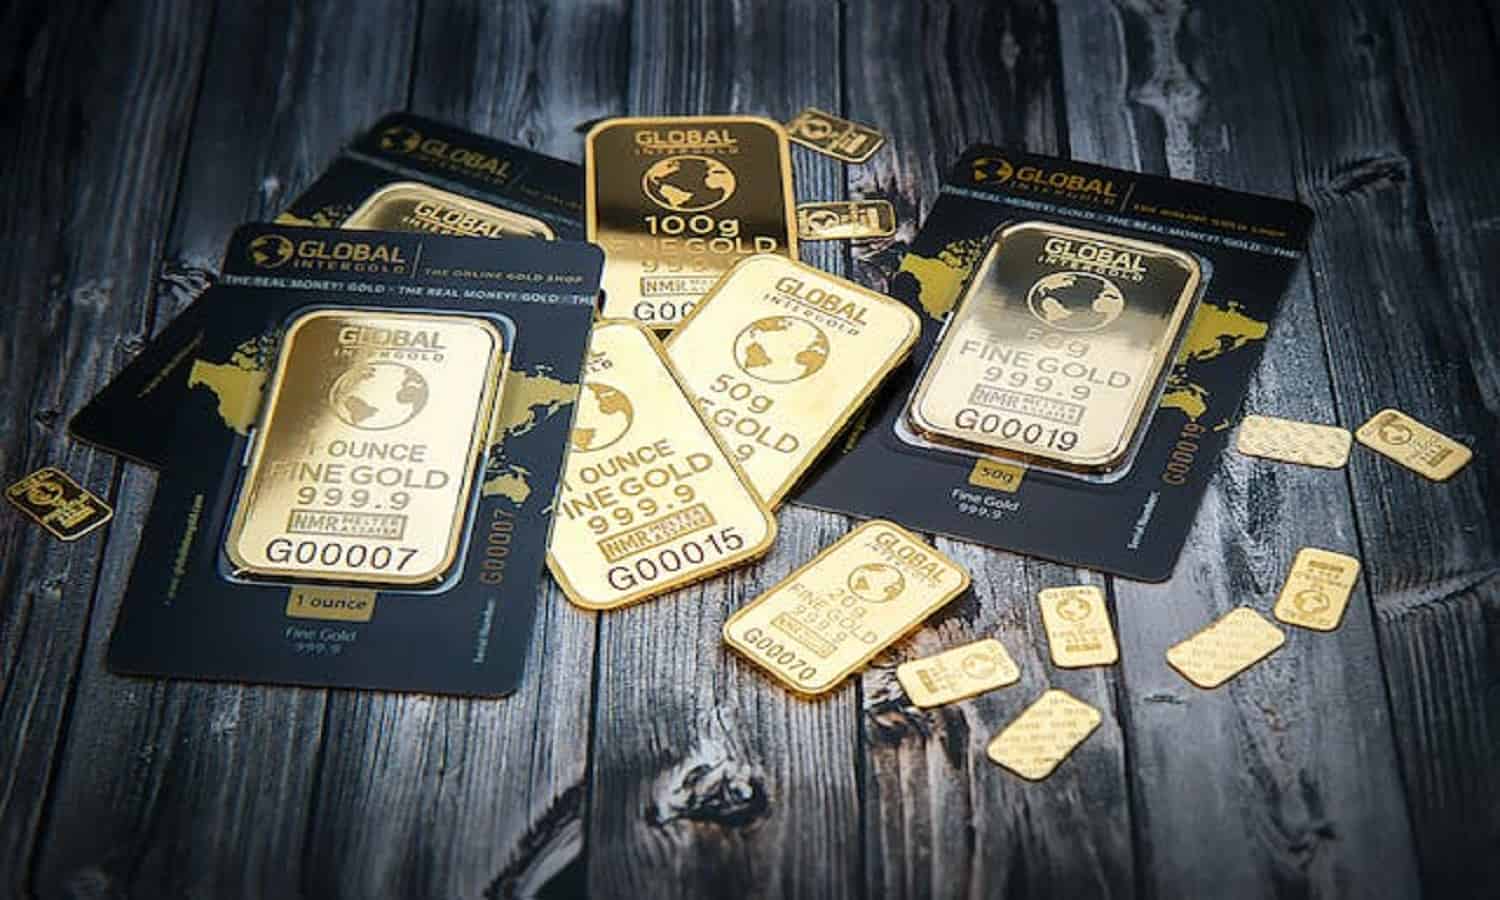 لوتس تتفاوض للتنازل عن 6 رخص للتنقيب عن الذهب في مصر
